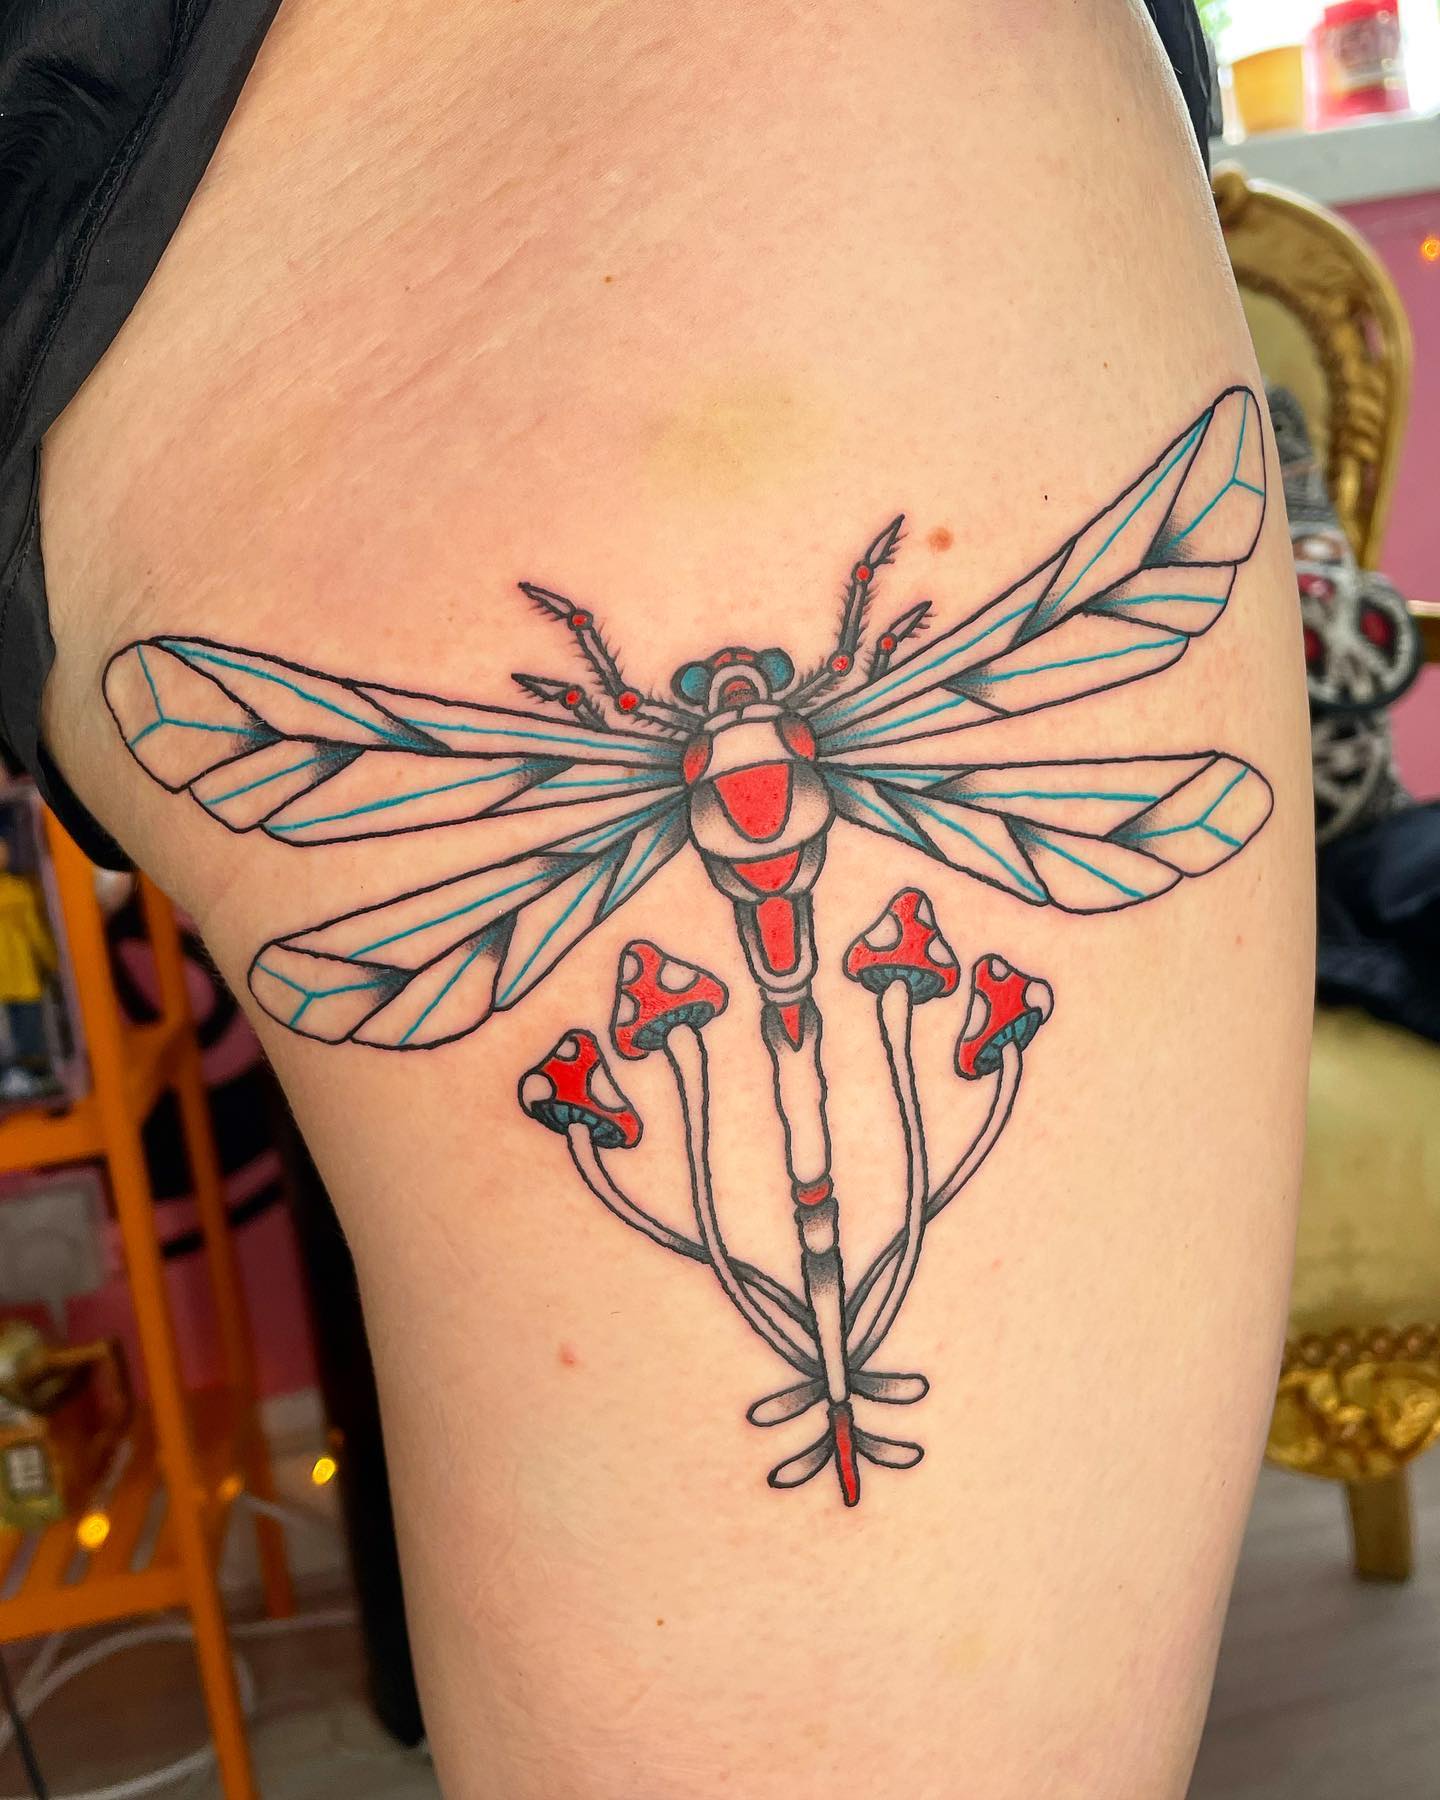 Tatuaje de libélula fresco en una pierna.